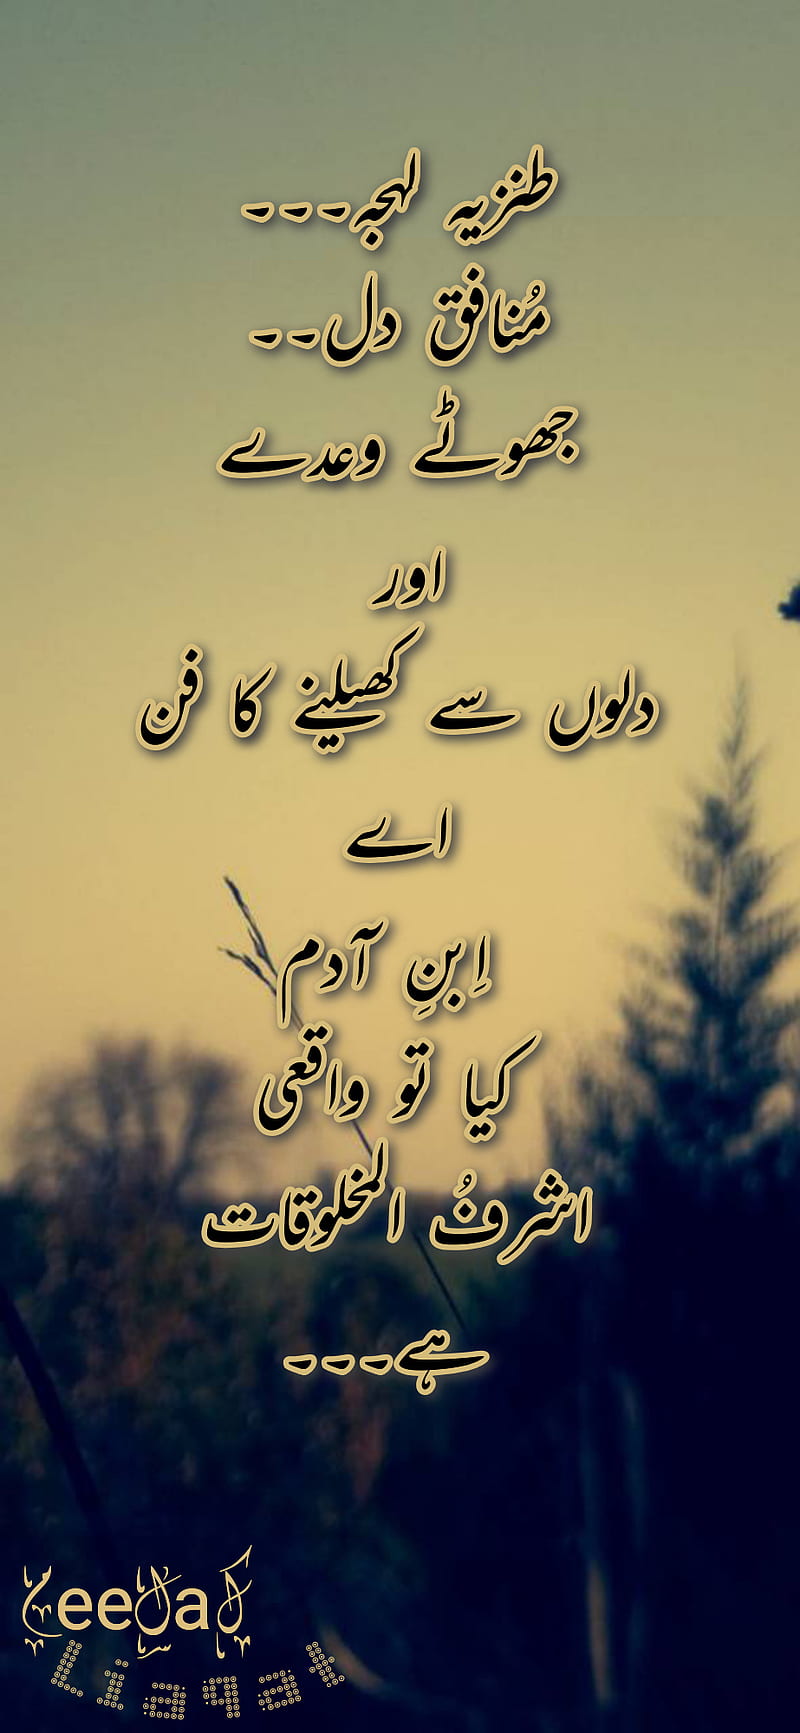 Quote, saying, urdu poetry, HD phone wallpaper